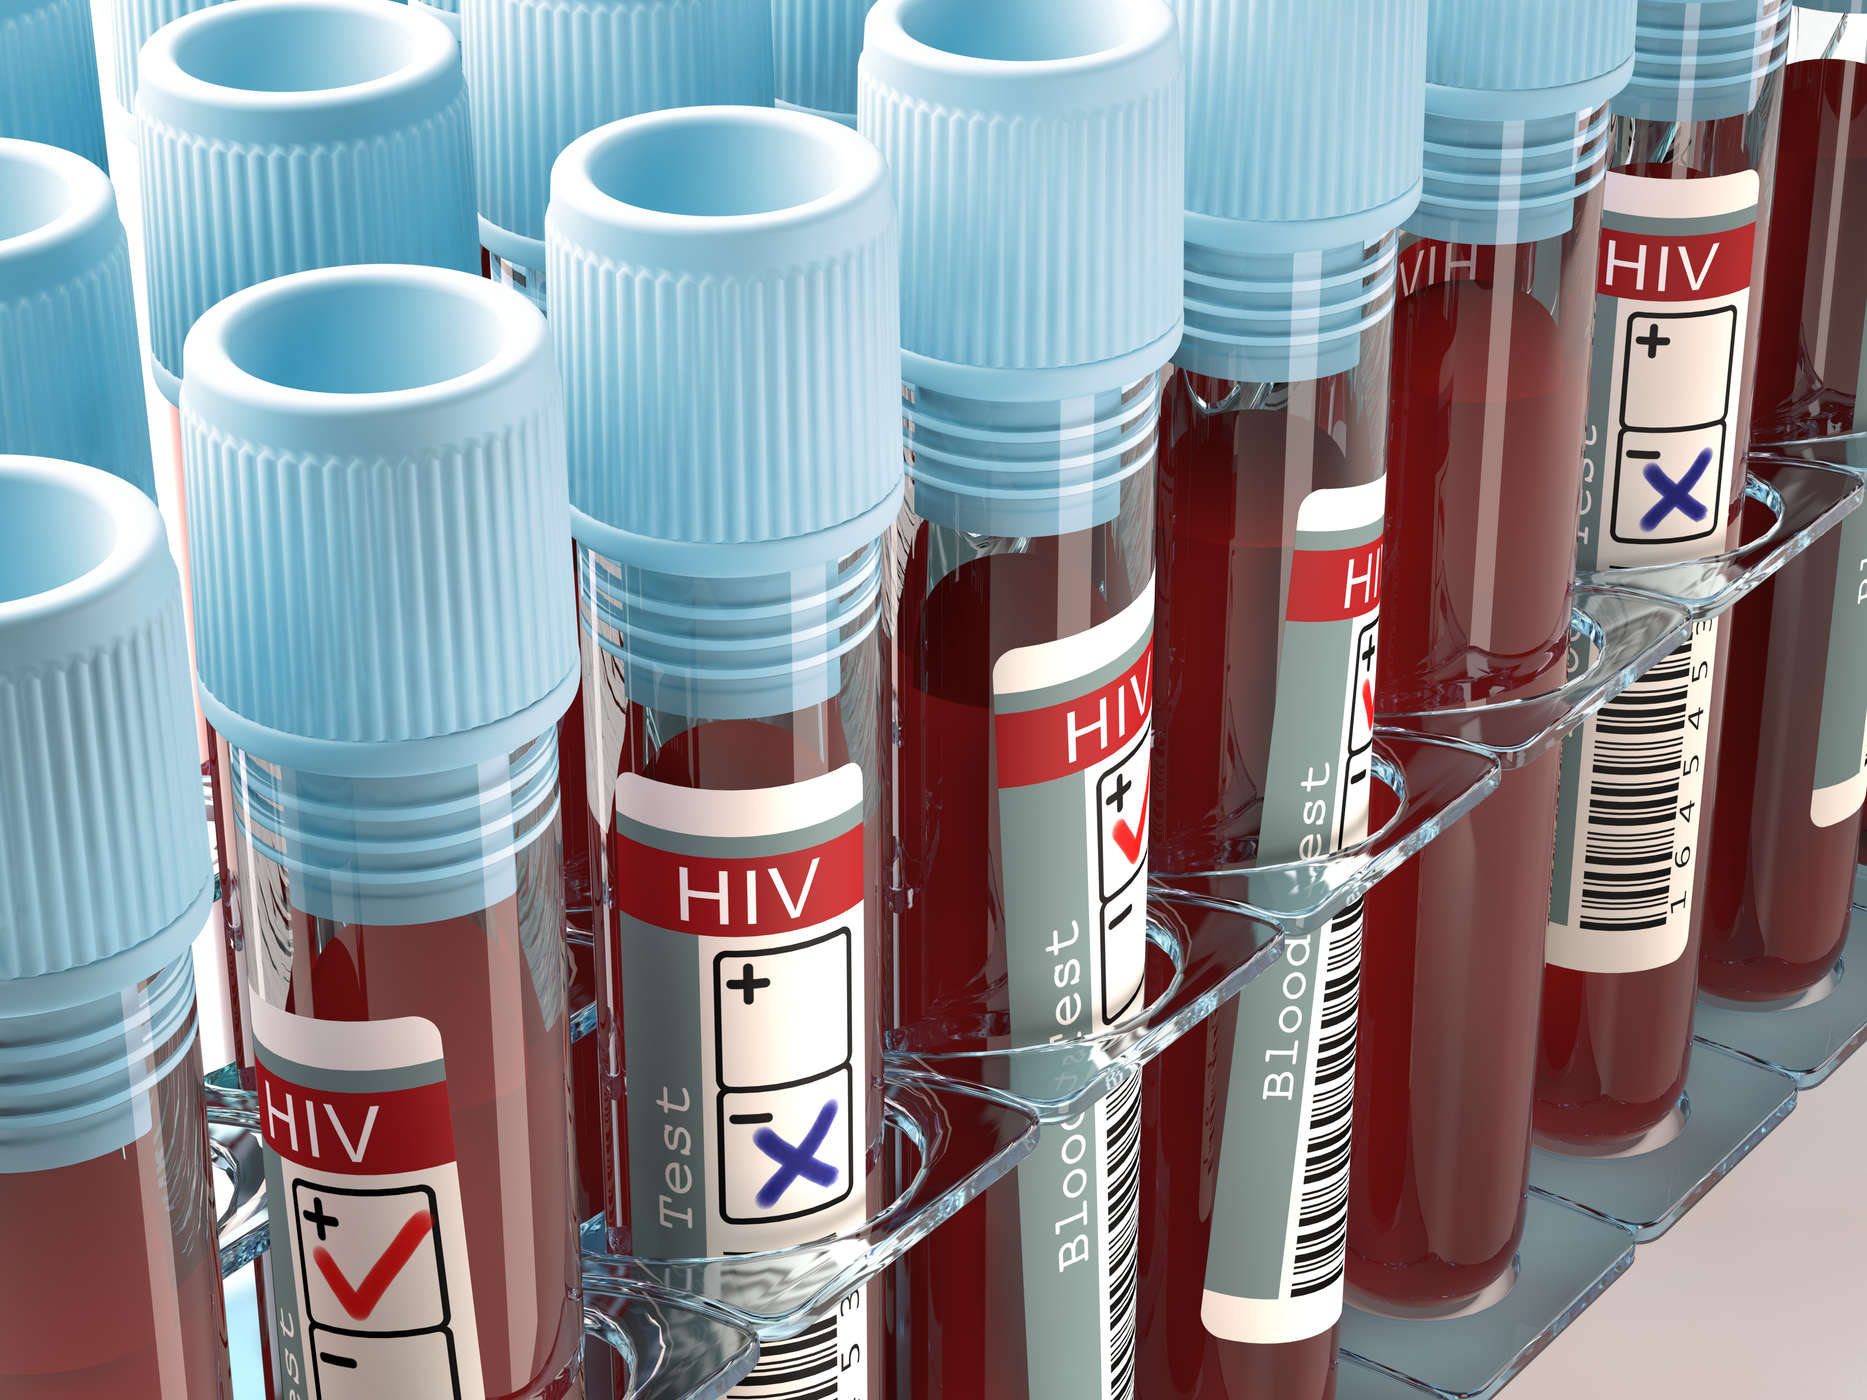 나는 HIV 감염의 위험이 있습니까? HIV AIDS의 다양한 원인을 조심하십시오